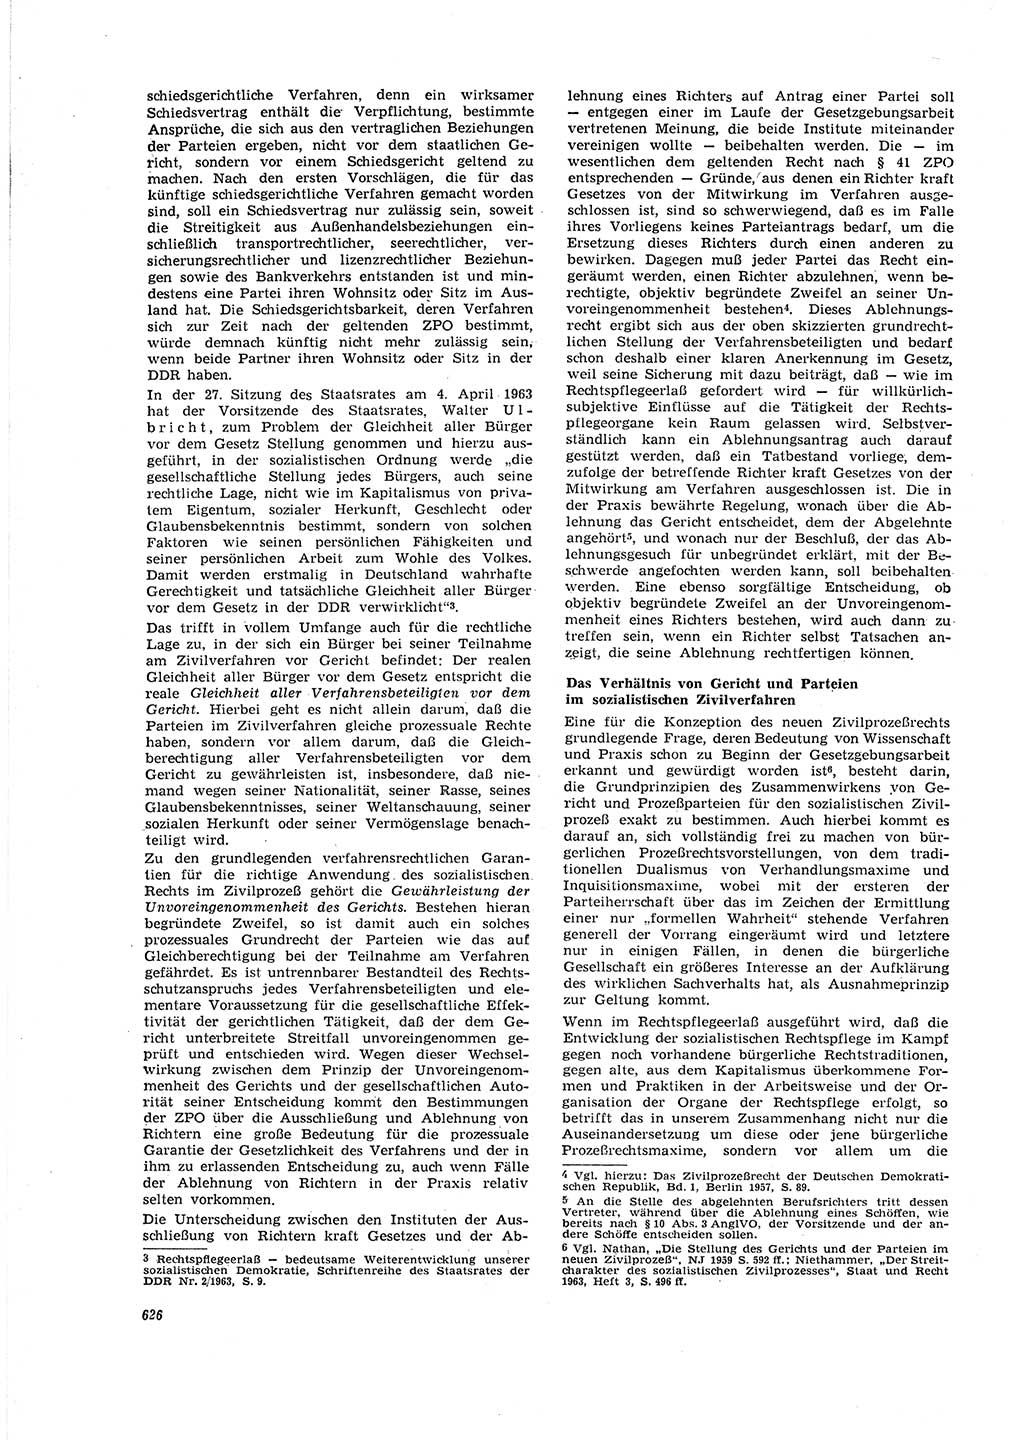 Neue Justiz (NJ), Zeitschrift für Recht und Rechtswissenschaft [Deutsche Demokratische Republik (DDR)], 20. Jahrgang 1966, Seite 626 (NJ DDR 1966, S. 626)